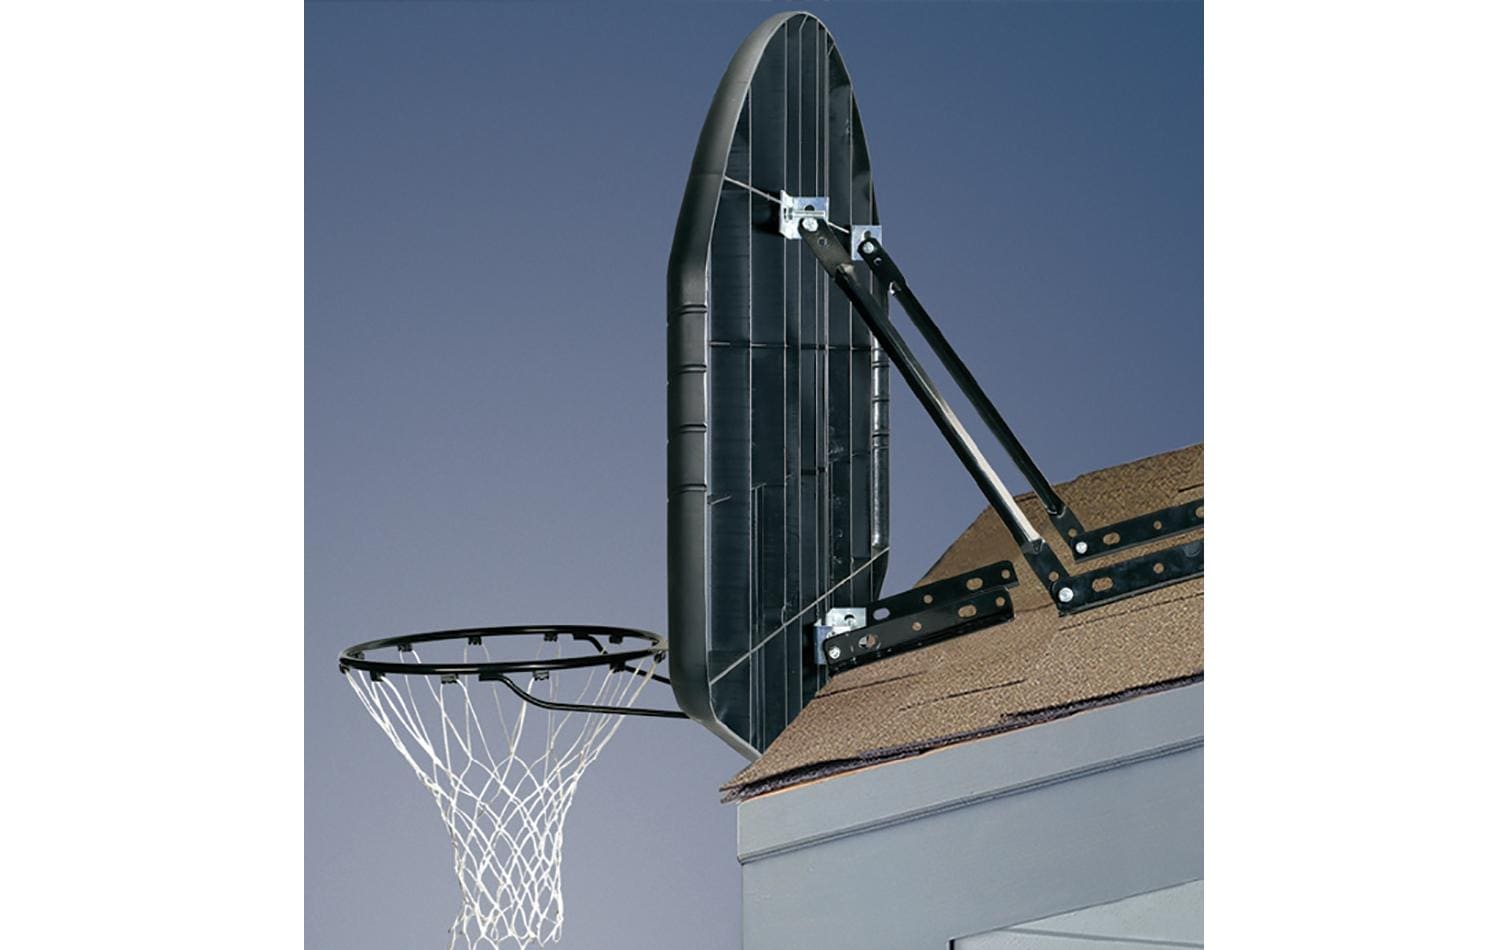 Spalding Basketballständer »Brettbefestigung«